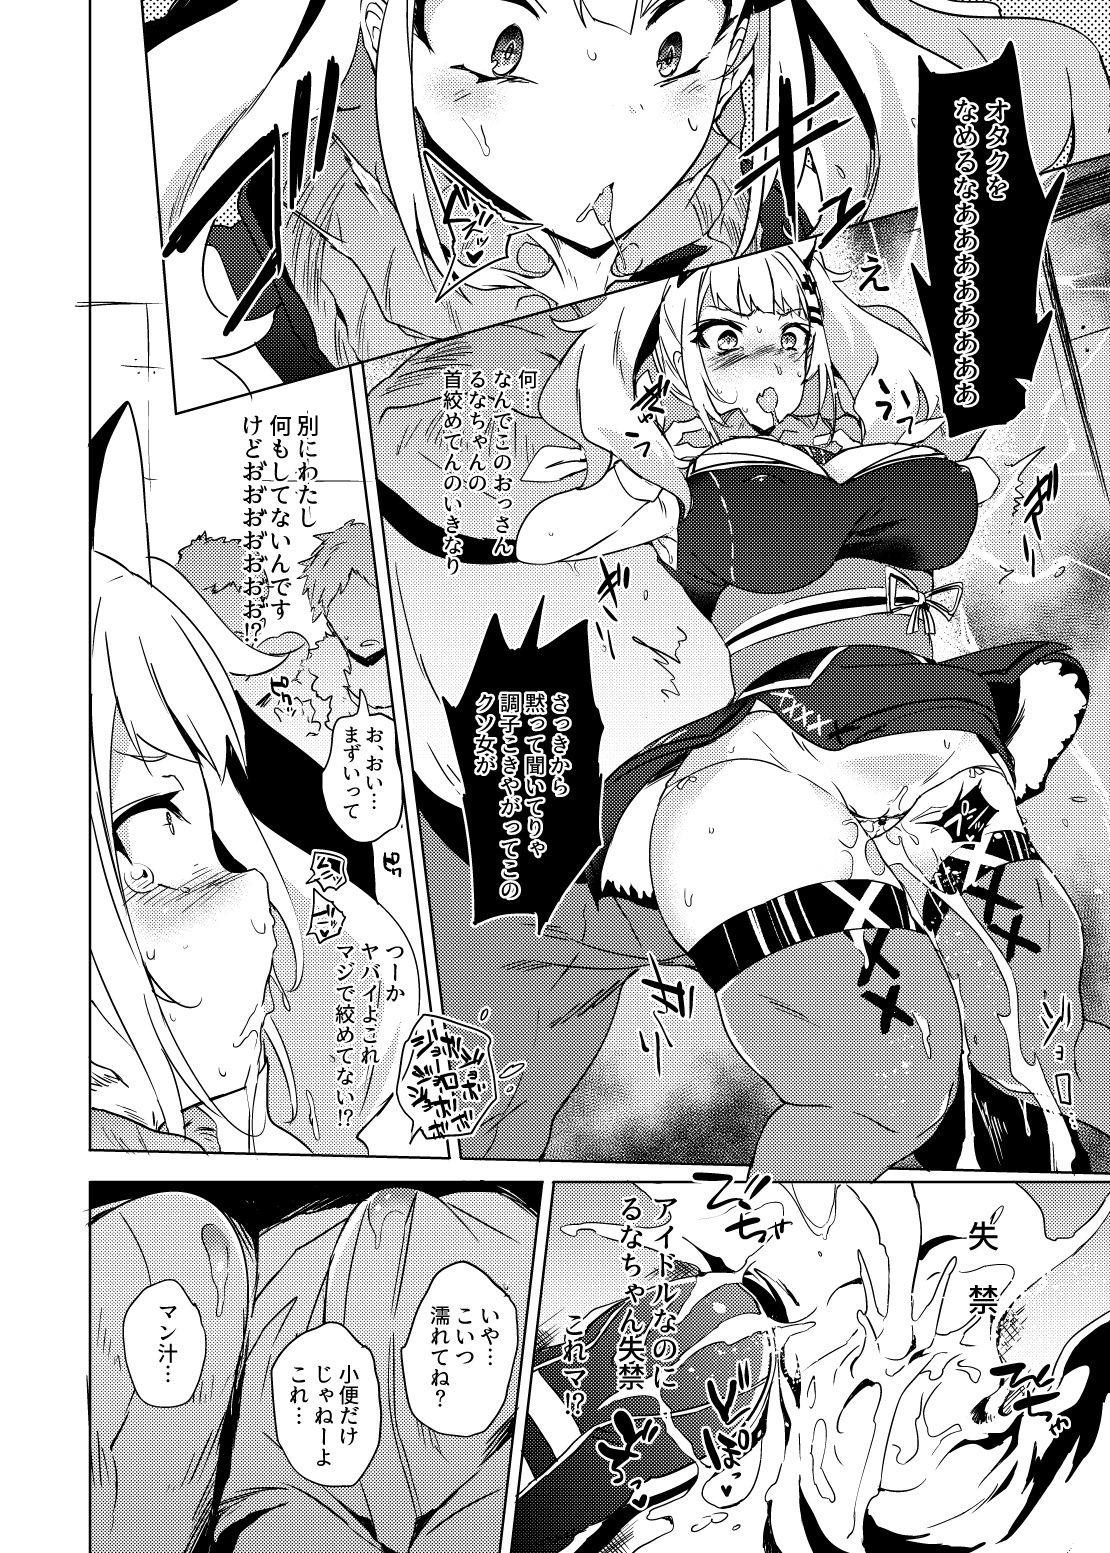 Fuyu Comi no Omake Manga 1